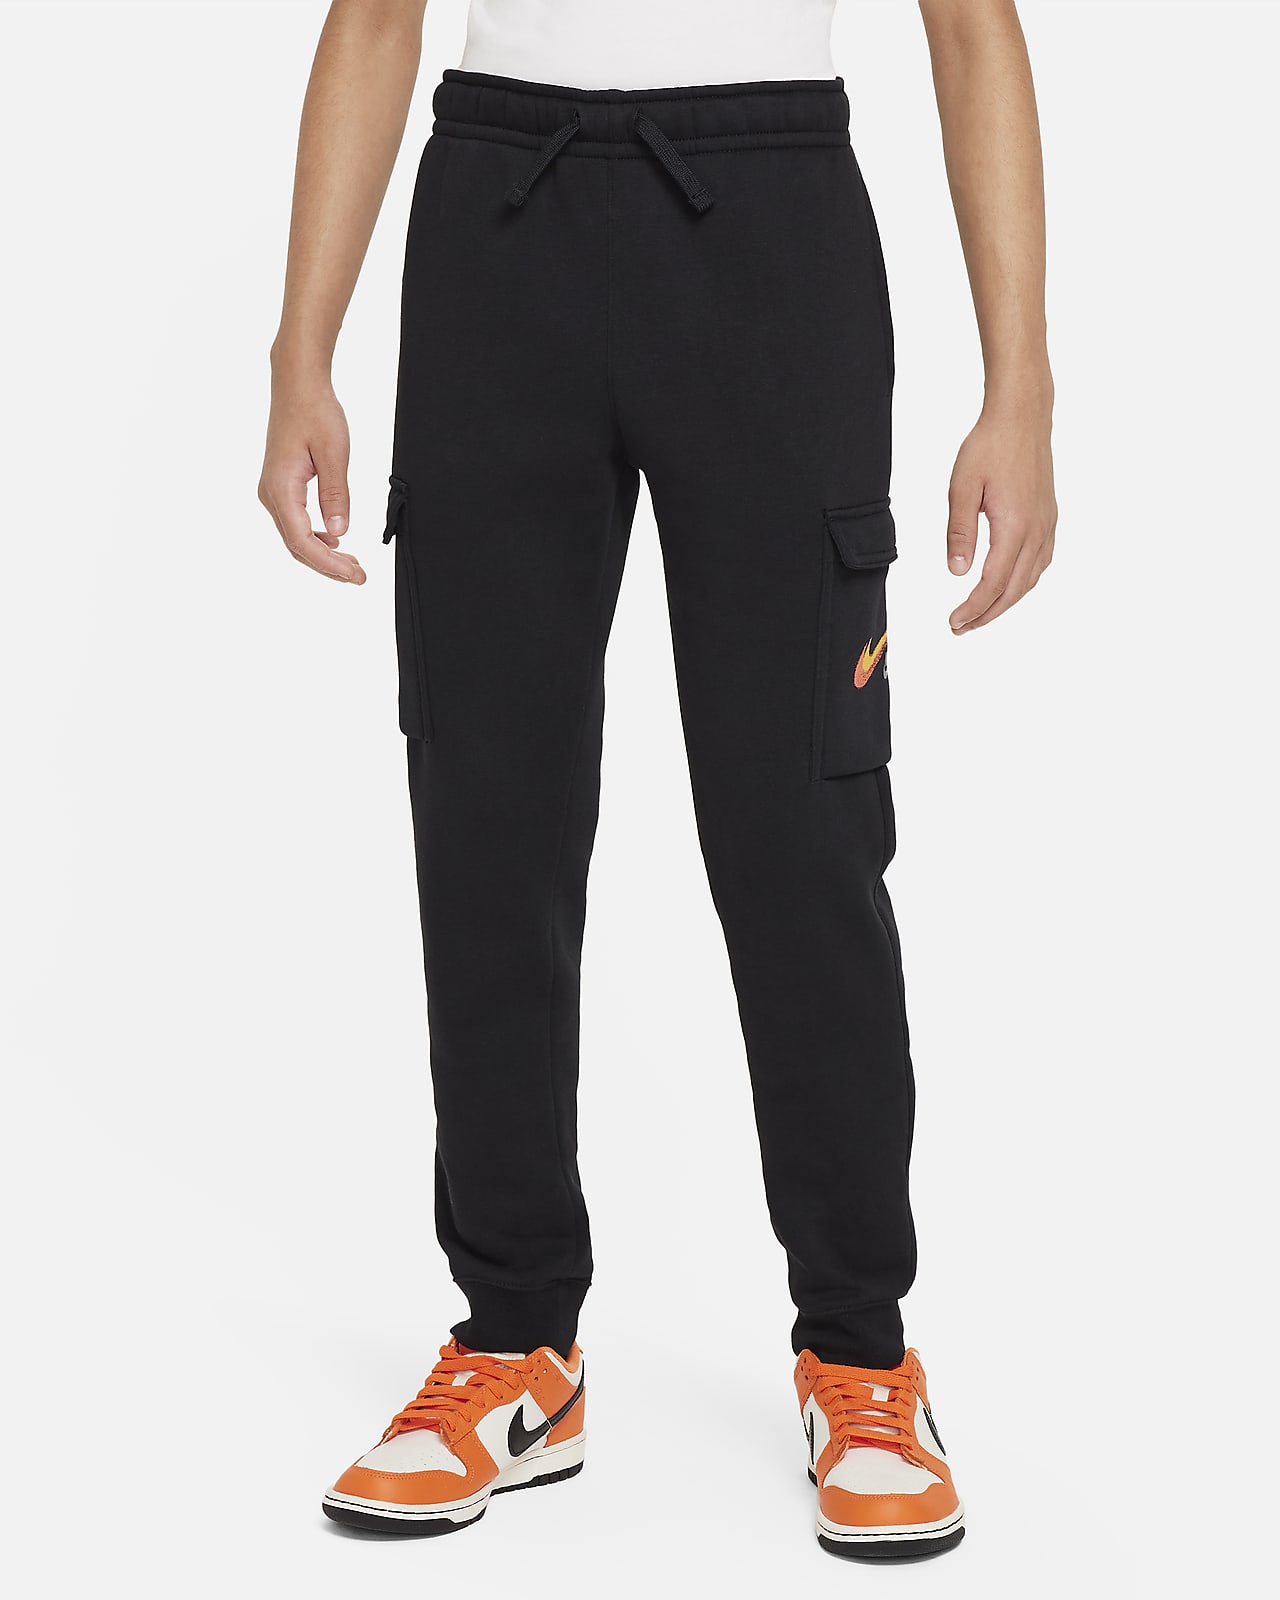 Nike Sportswear Fleece Grafikli Genç Çocuk (Erkek) Kargo Eşofman Altı